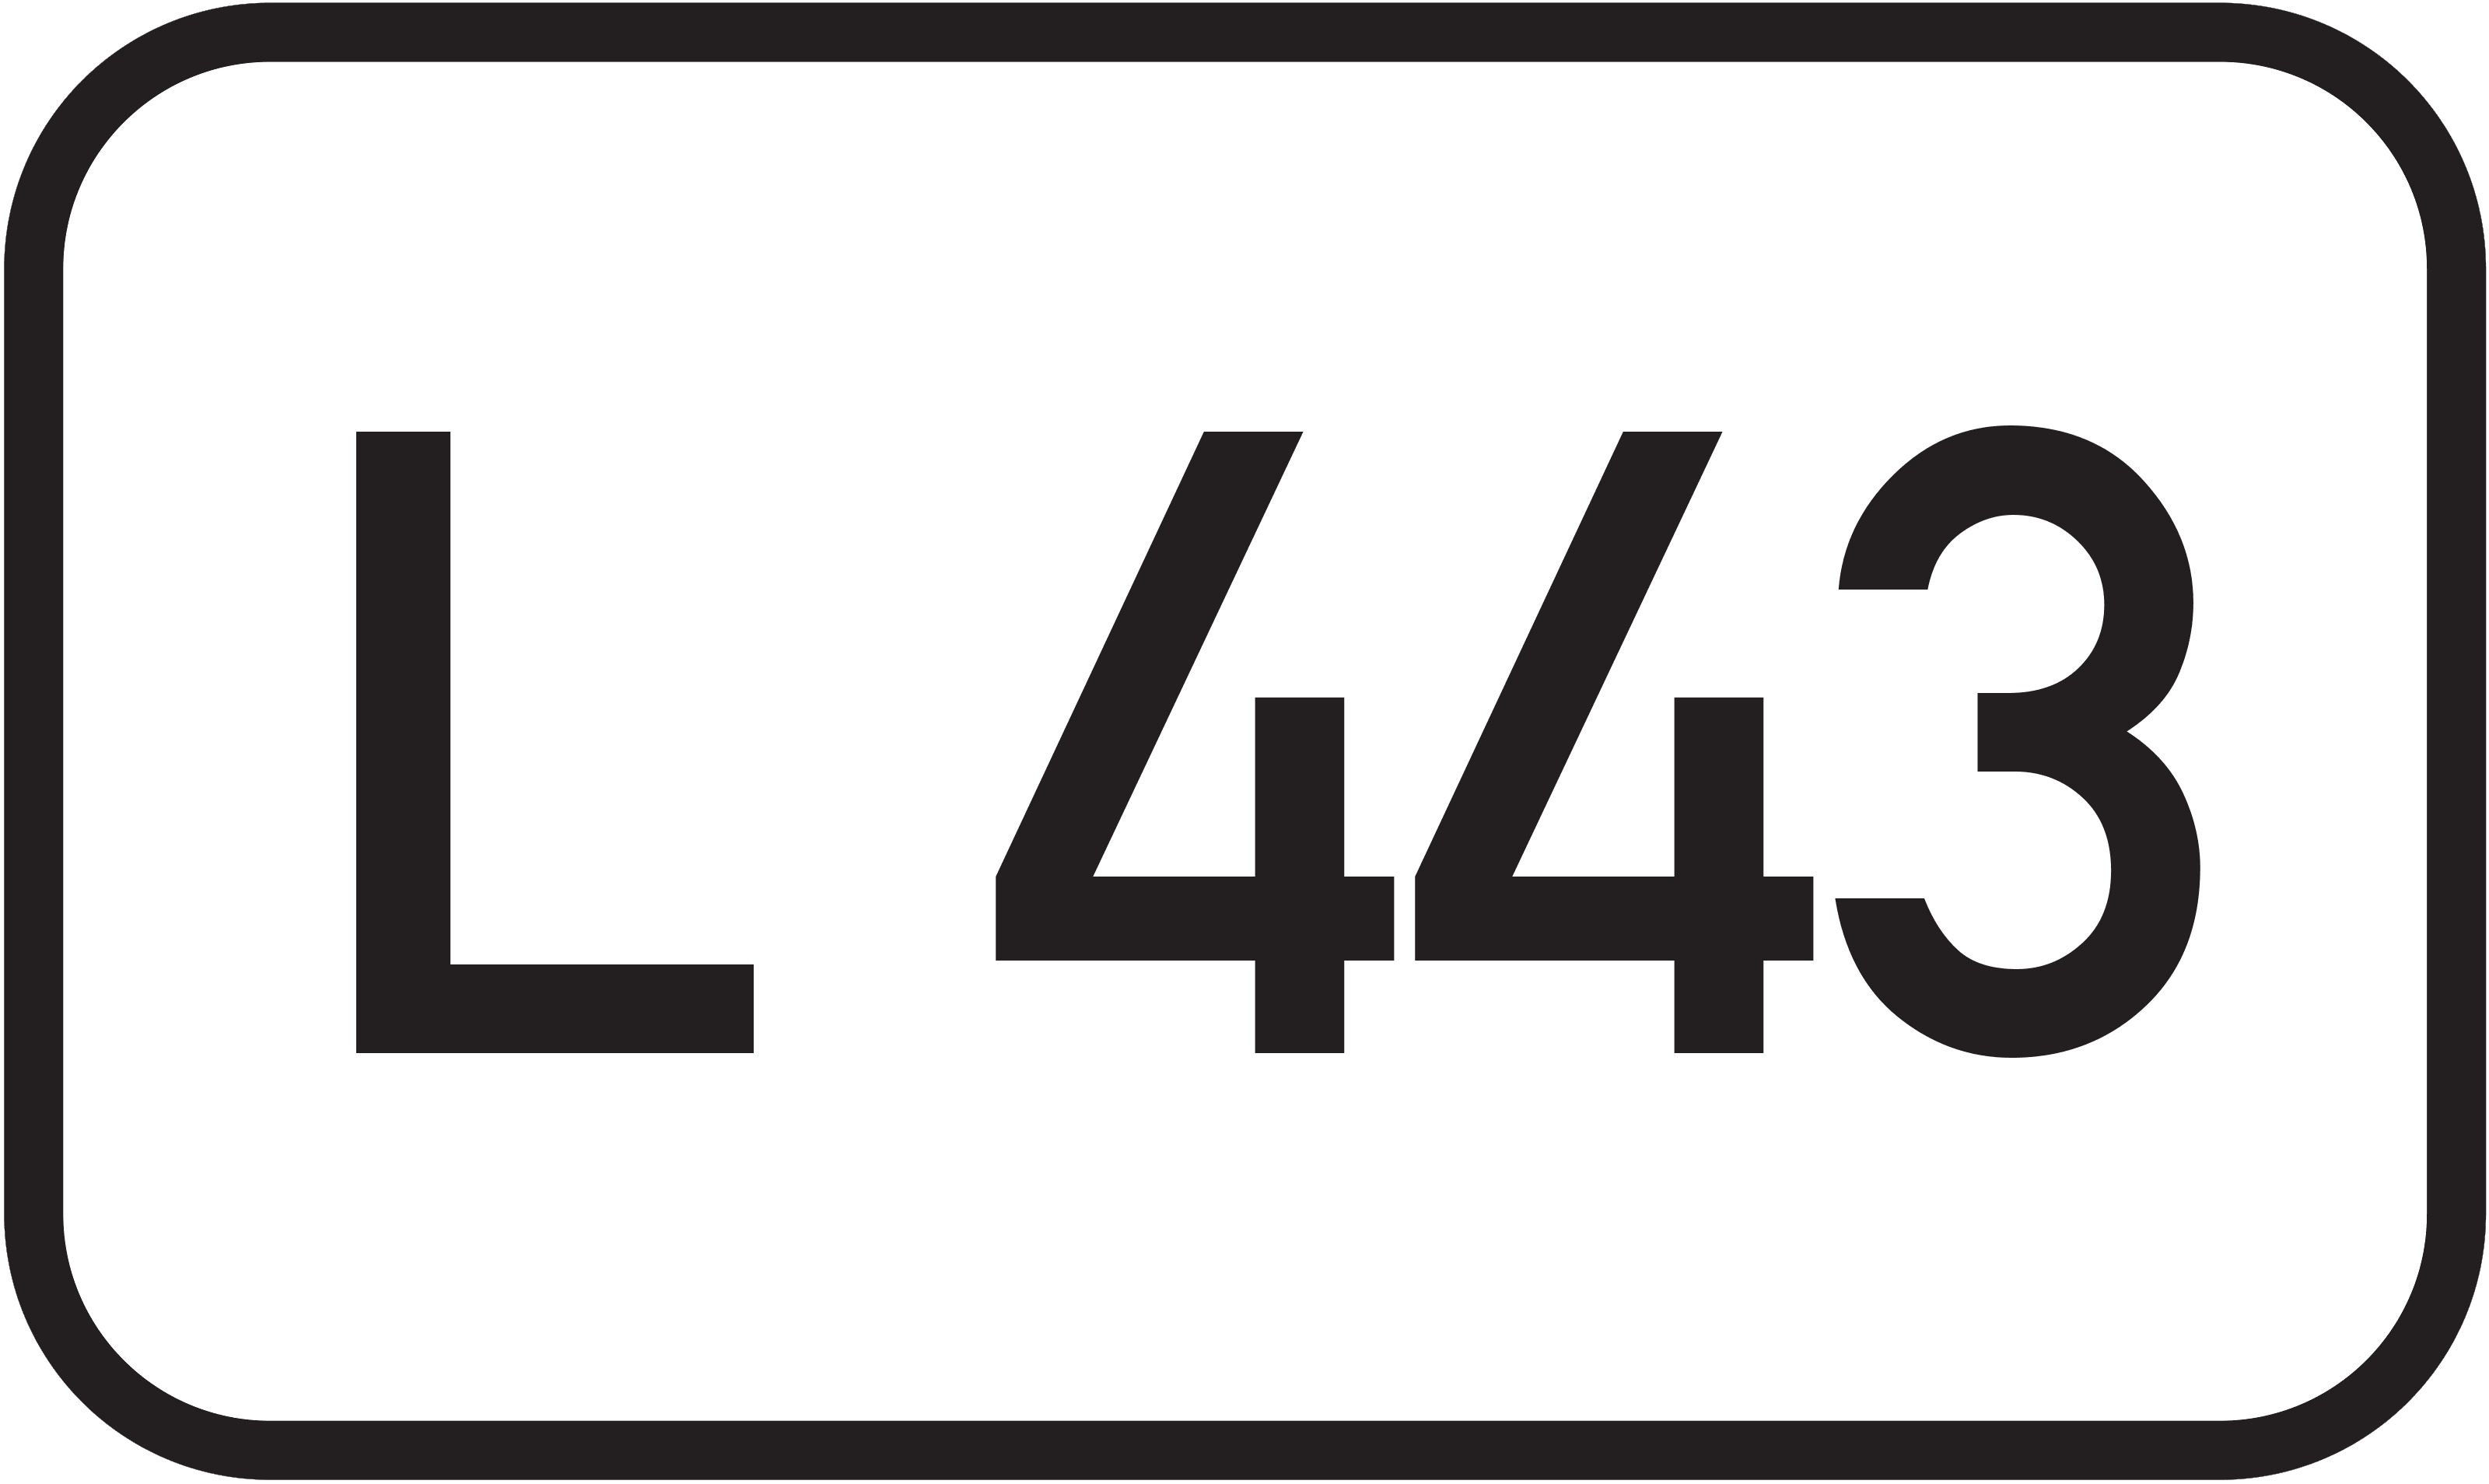 Landesstraße L 443